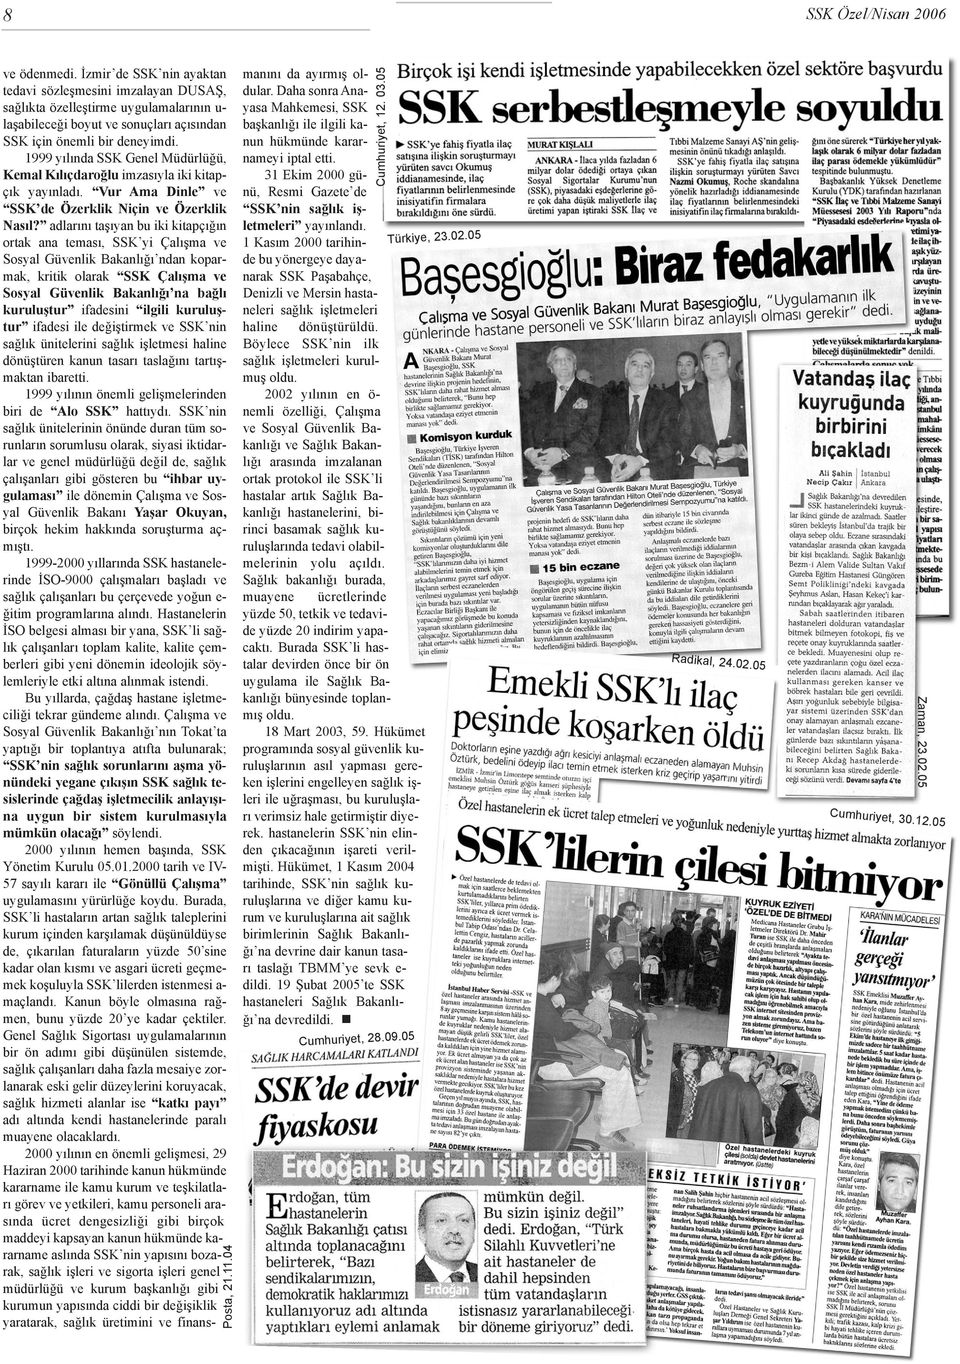 1999 yýlýnda SSK Genel Müdürlüðü, Kemal Kýlýçdaroðlu imzasýyla iki kitapçýk yayýnladý. Vur Ama Dinle ve SSK de Özerklik Niçin ve Özerklik Nasýl?